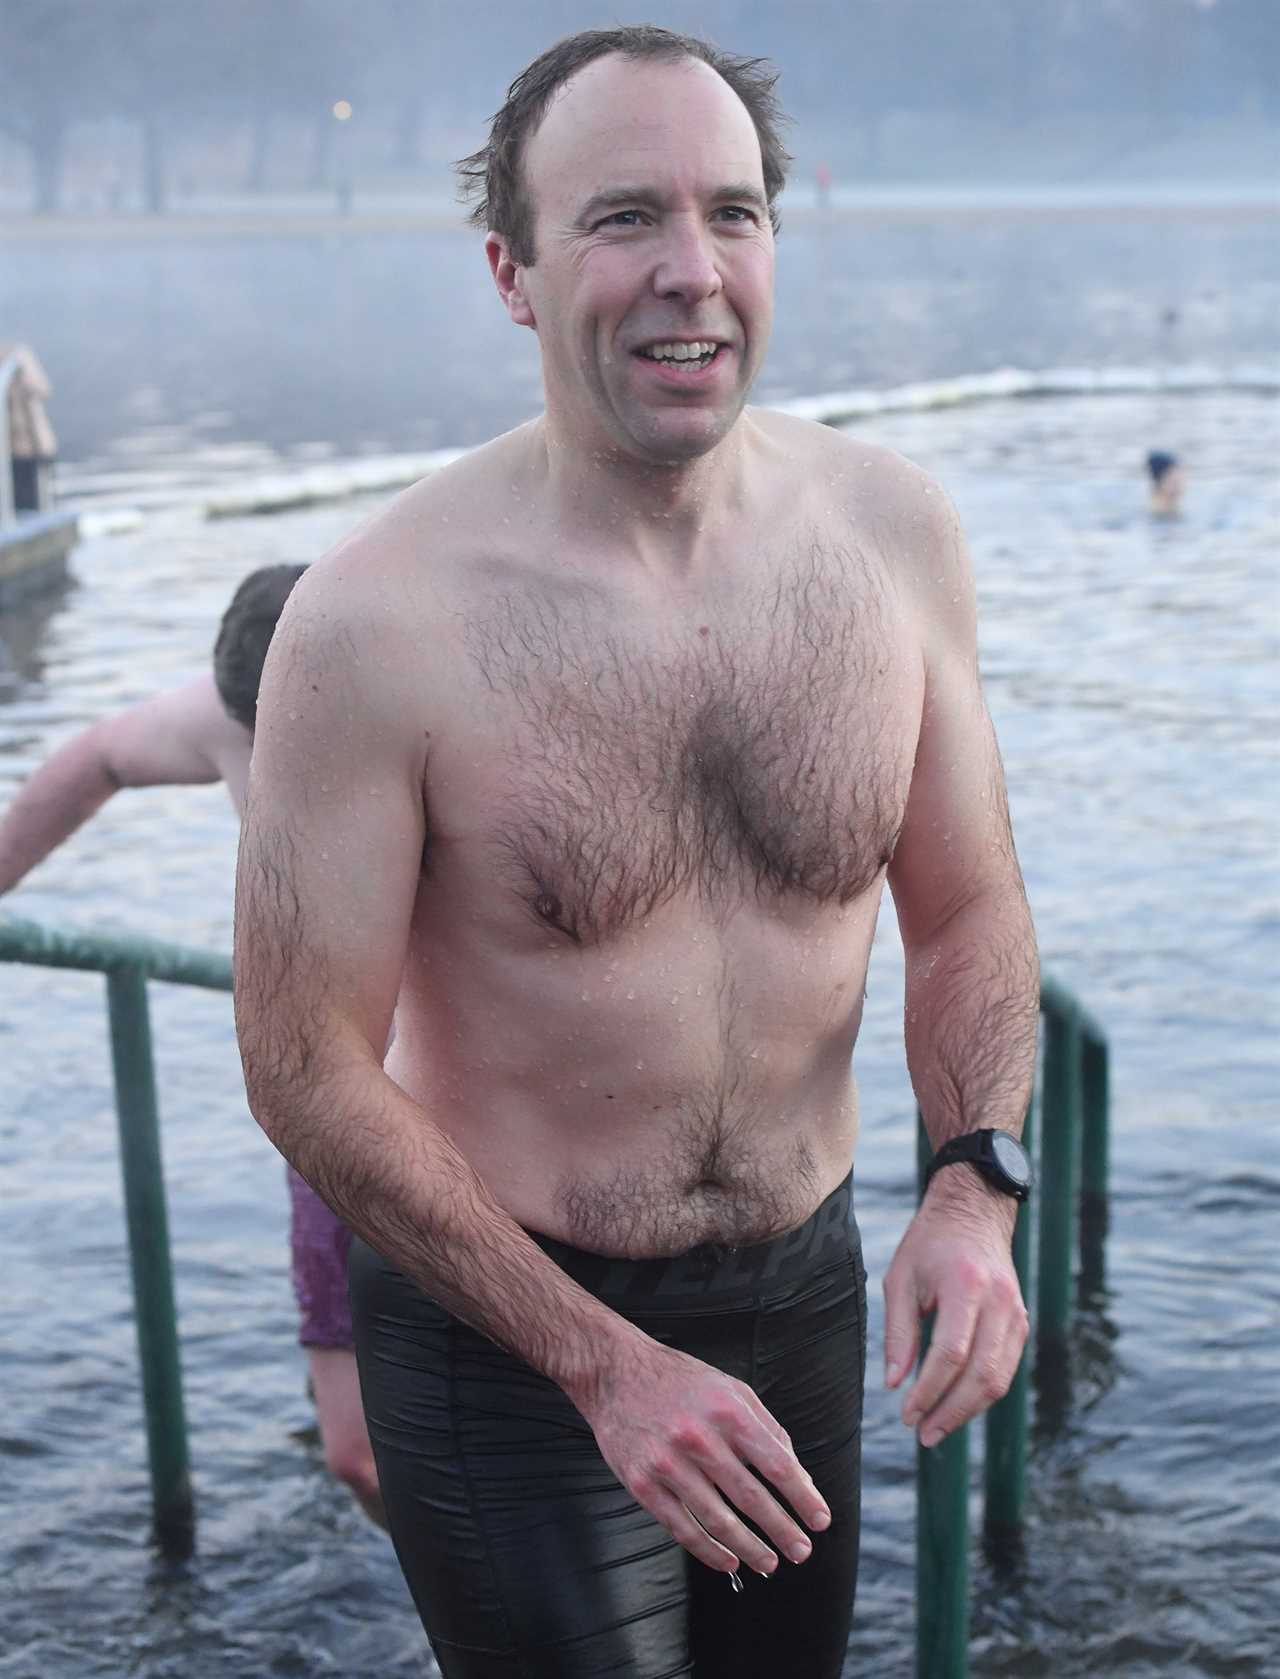 Frozen Matt Hancock does his best Daniel Craig impression with swim in the Serpentine